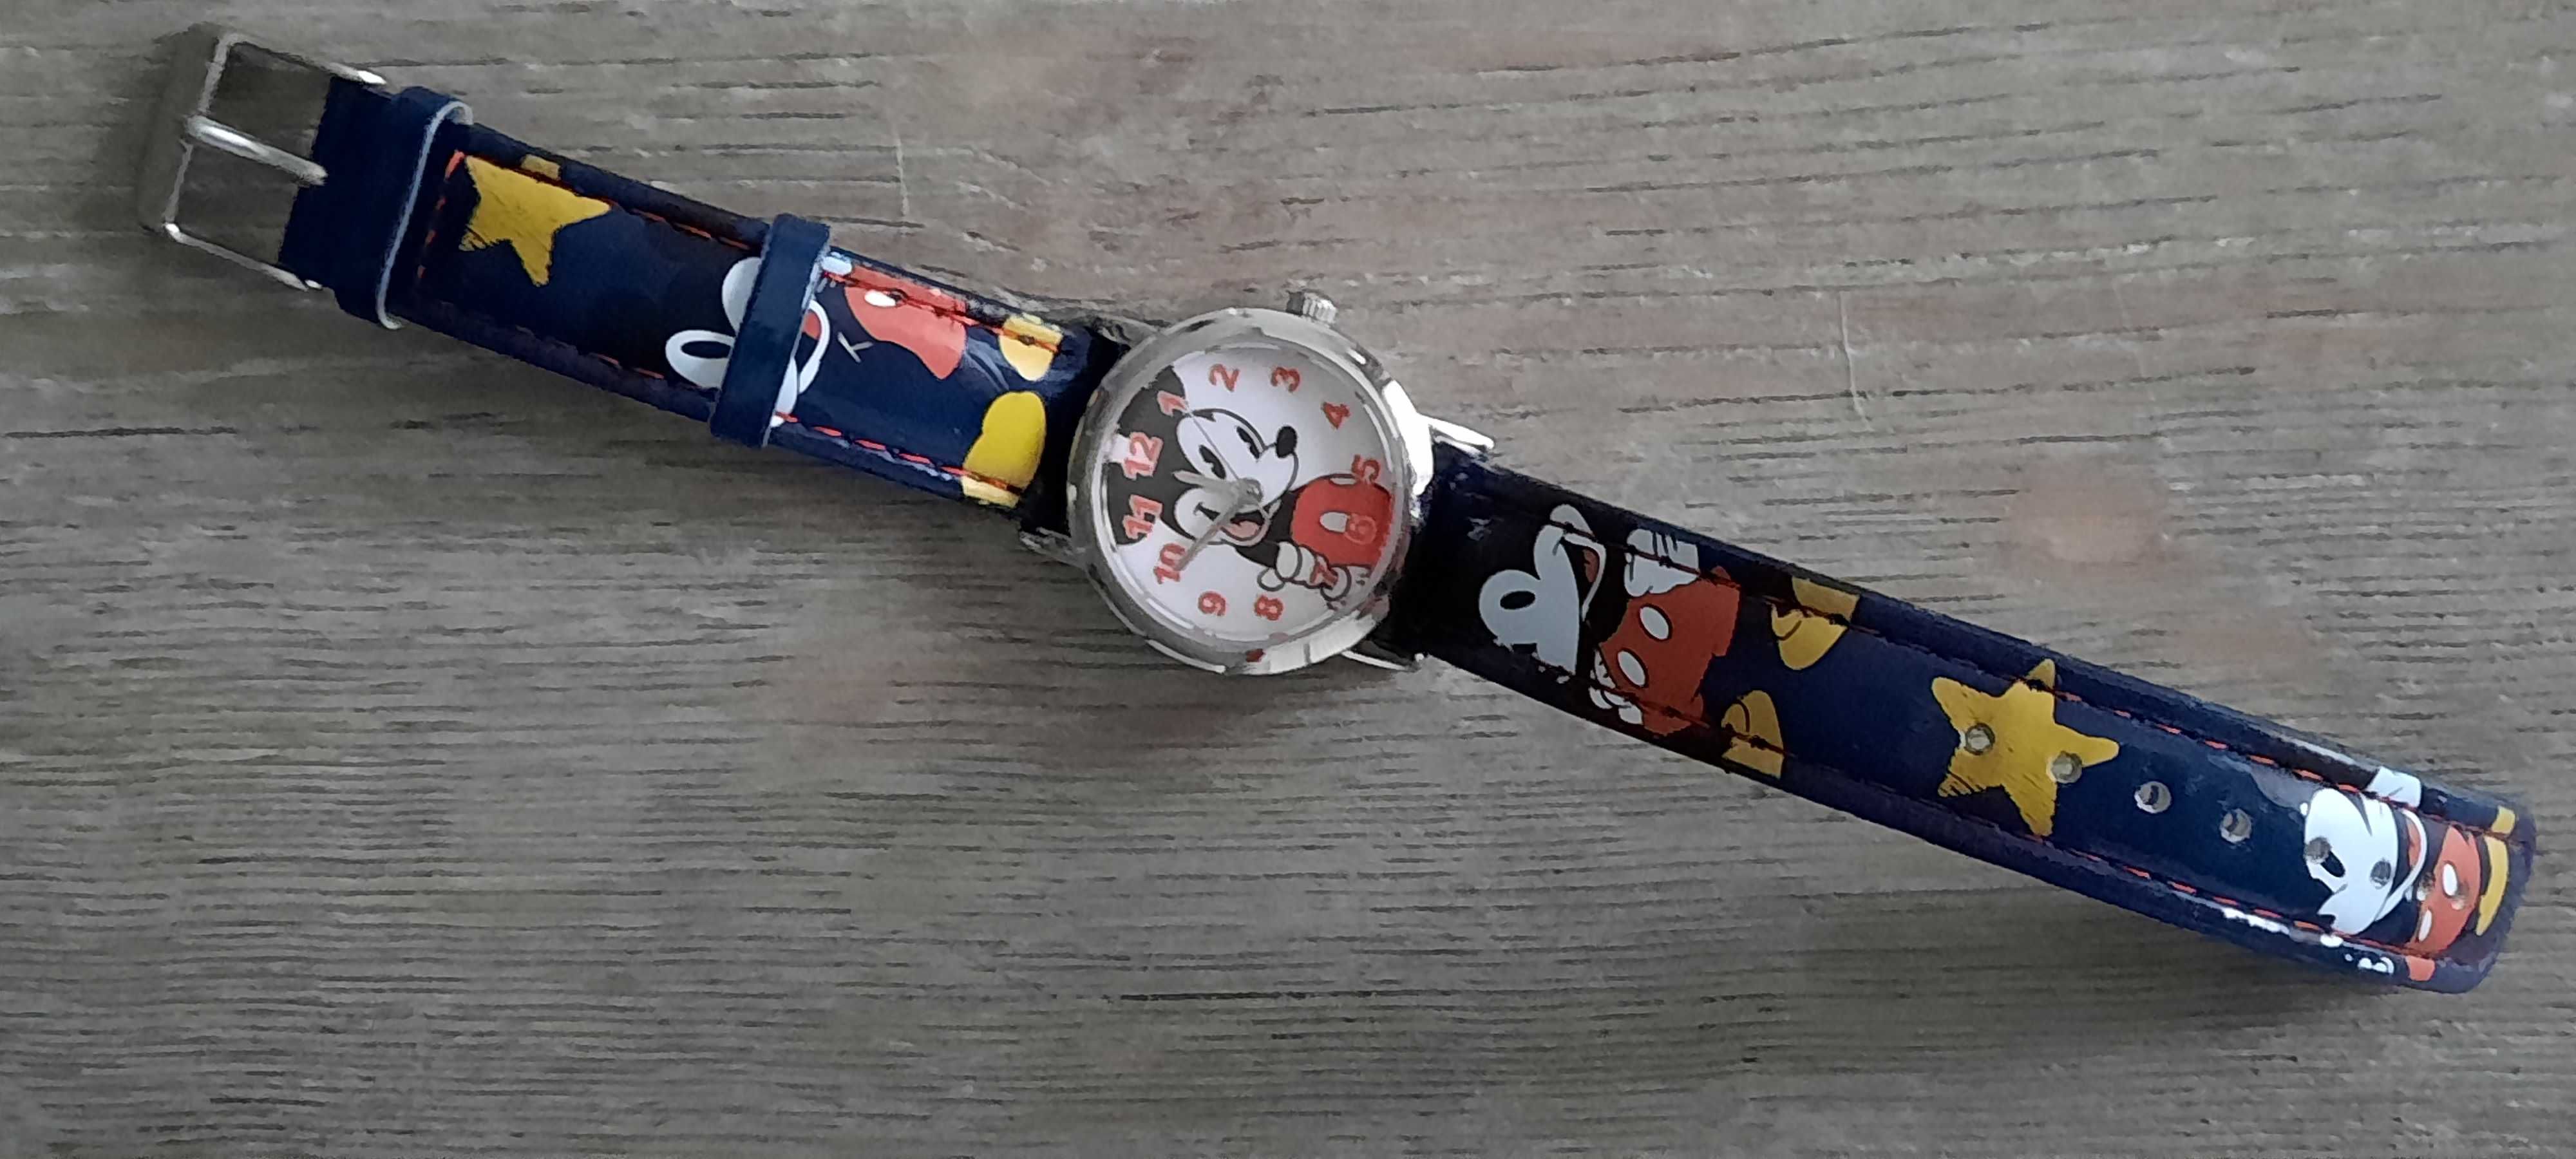 Zegarek dla dziewczynki Mickey Mouse Apart dp AM:PM 140-k220